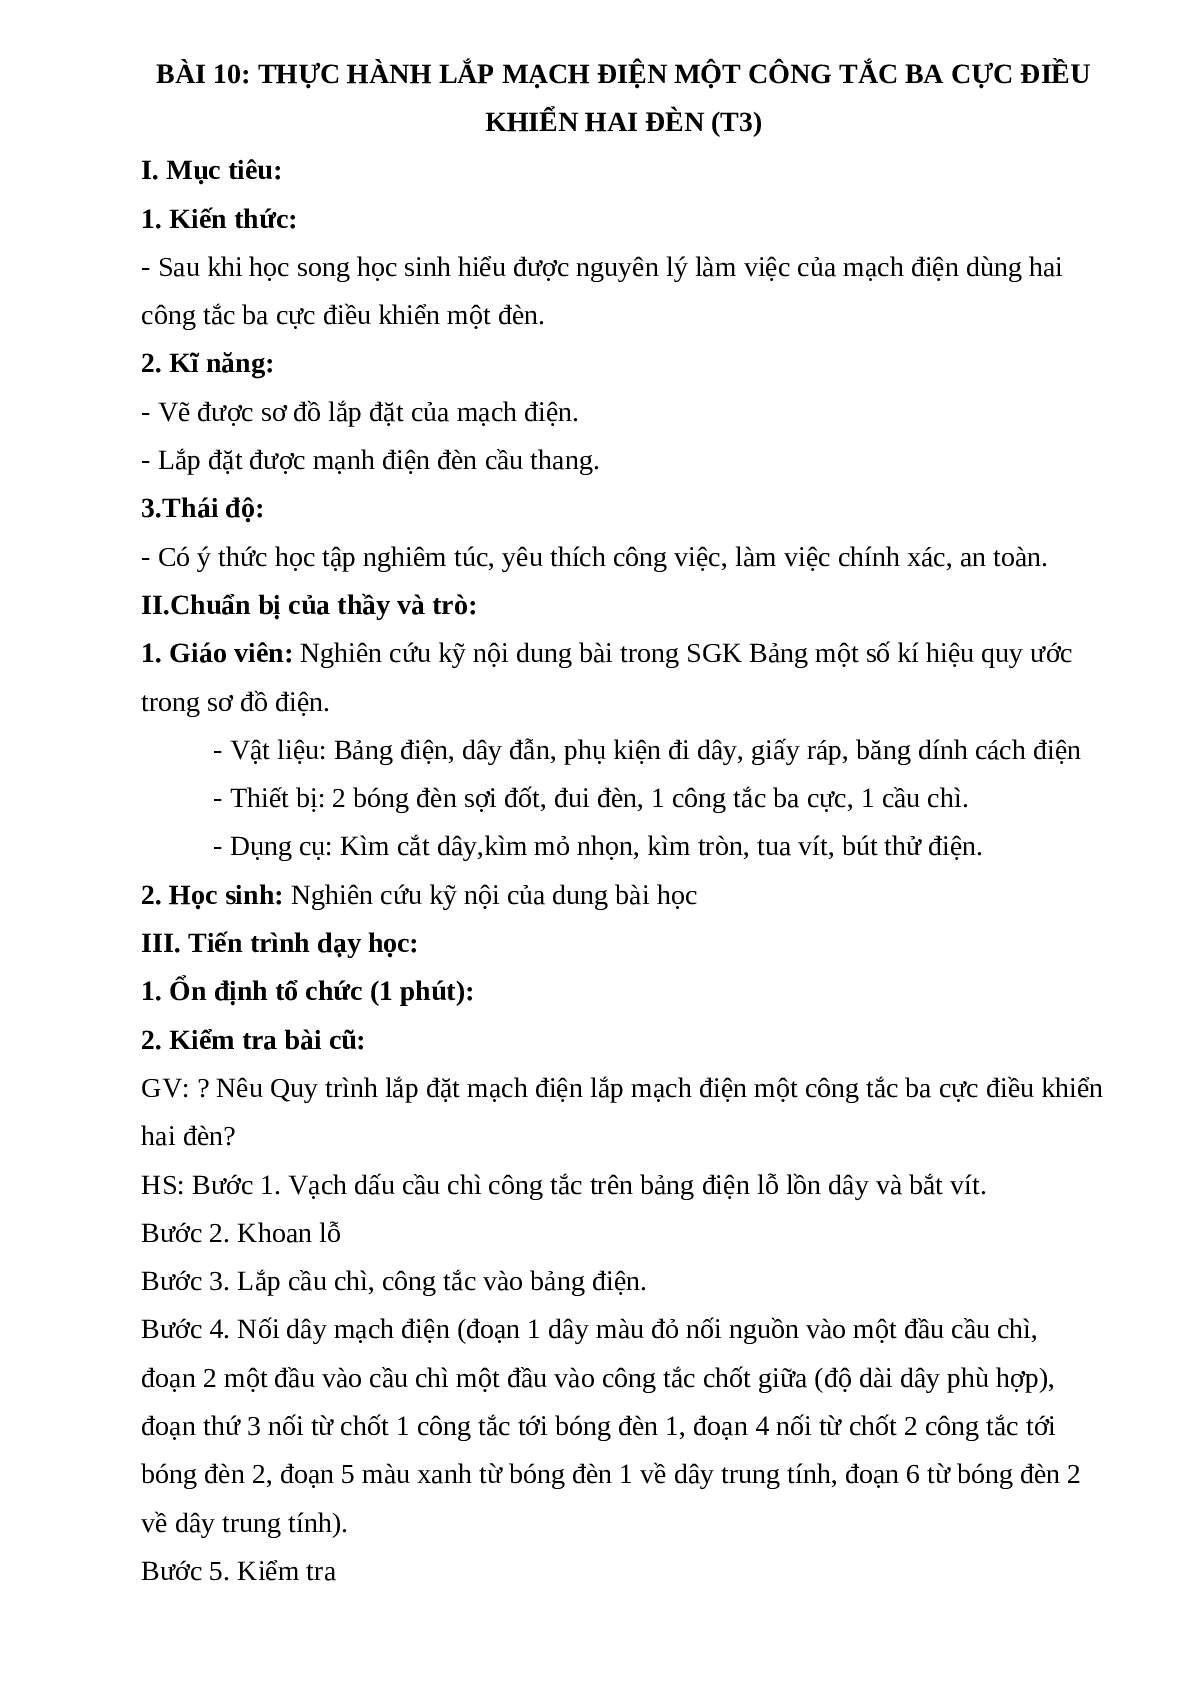 GIÁO ÁN CÔNG NGHỆ 9 BÀI 10: THỰC HÀNH LẮP MẠCH ĐIỆN MỘT CÔNG TẮC BA CỰC ĐIỀU KHIỂN HAI ĐÈN (T3) MỚI NHẤT (trang 1)